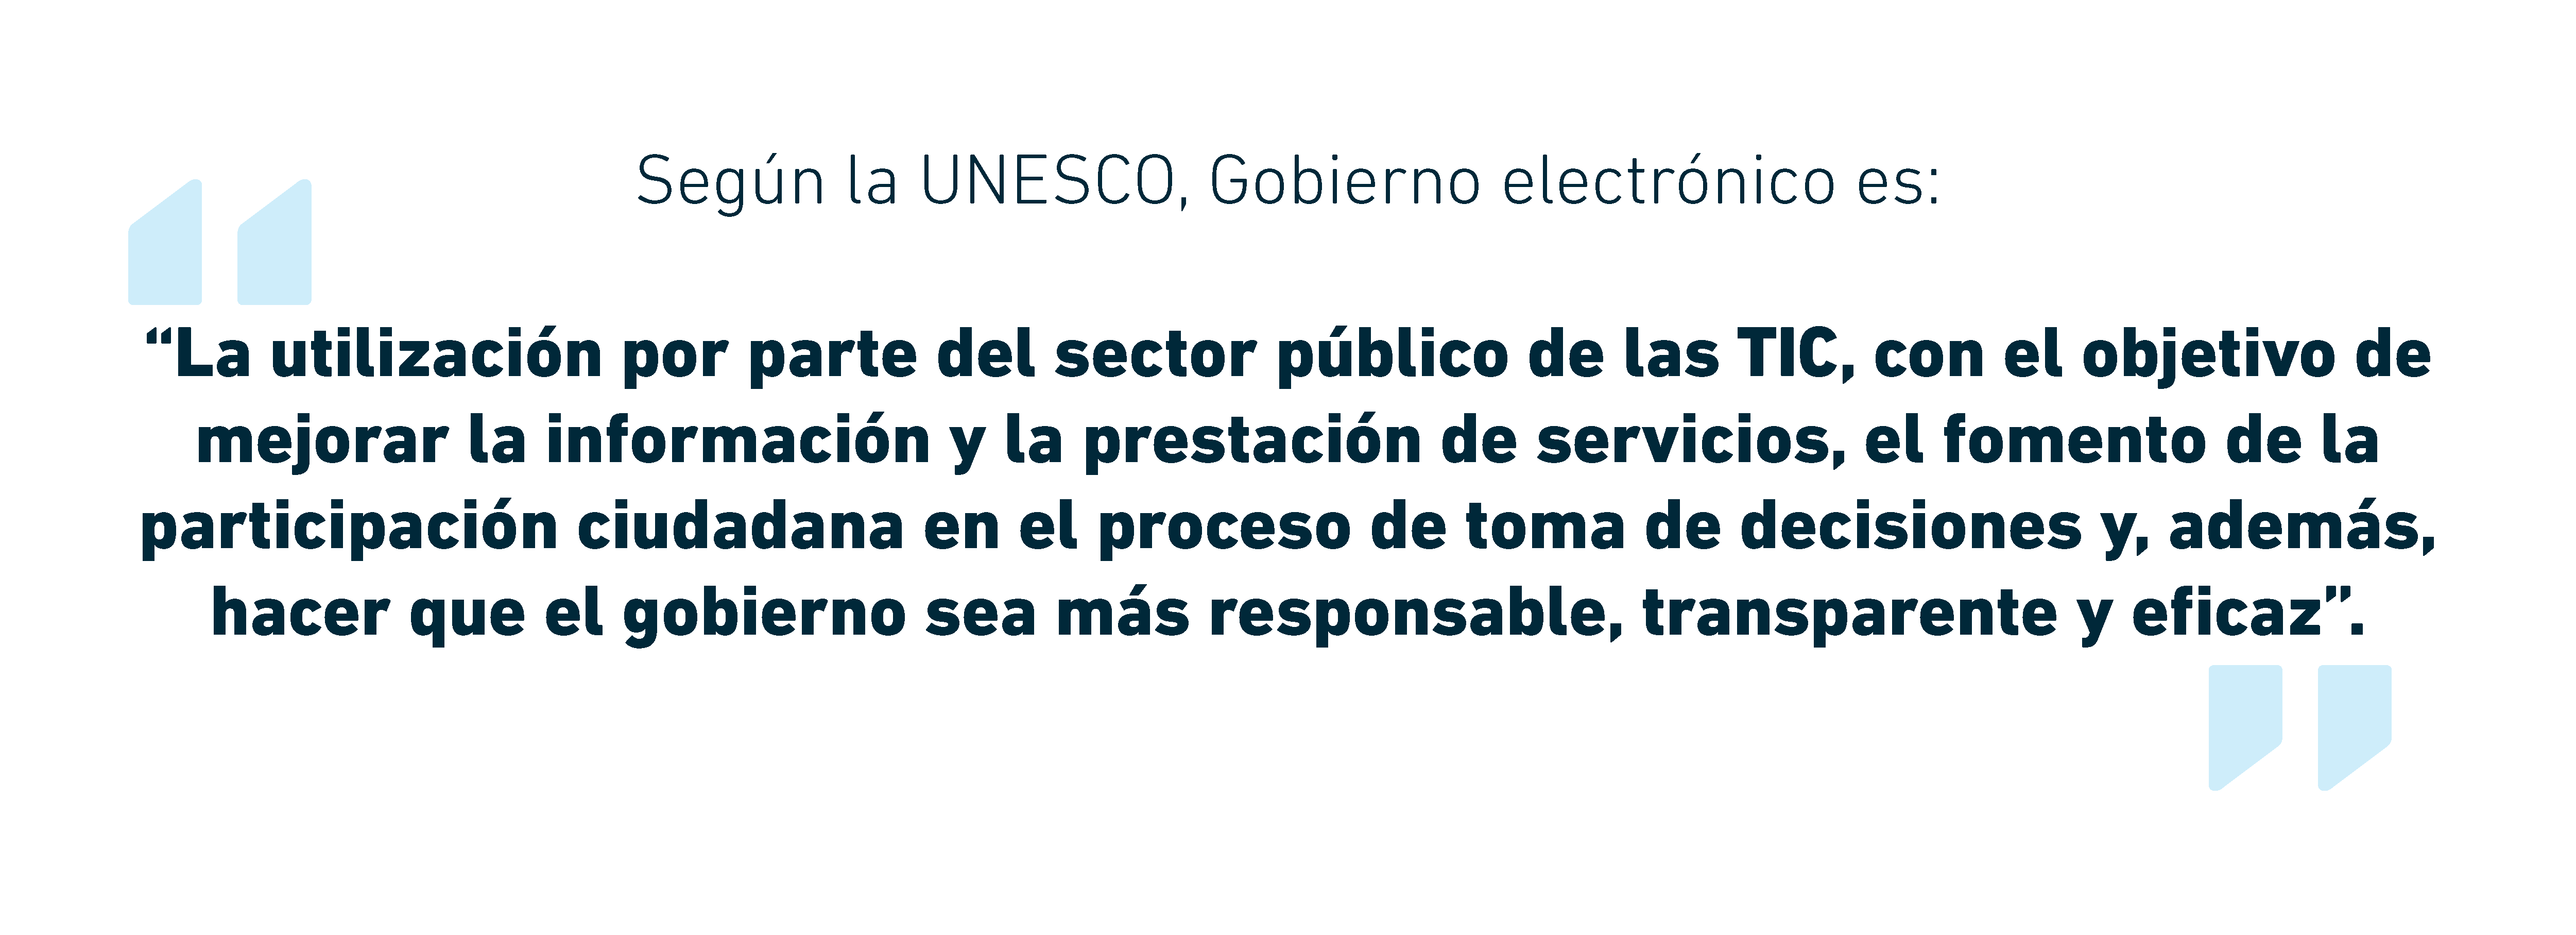 Gobierno Electrónico | UNESCO